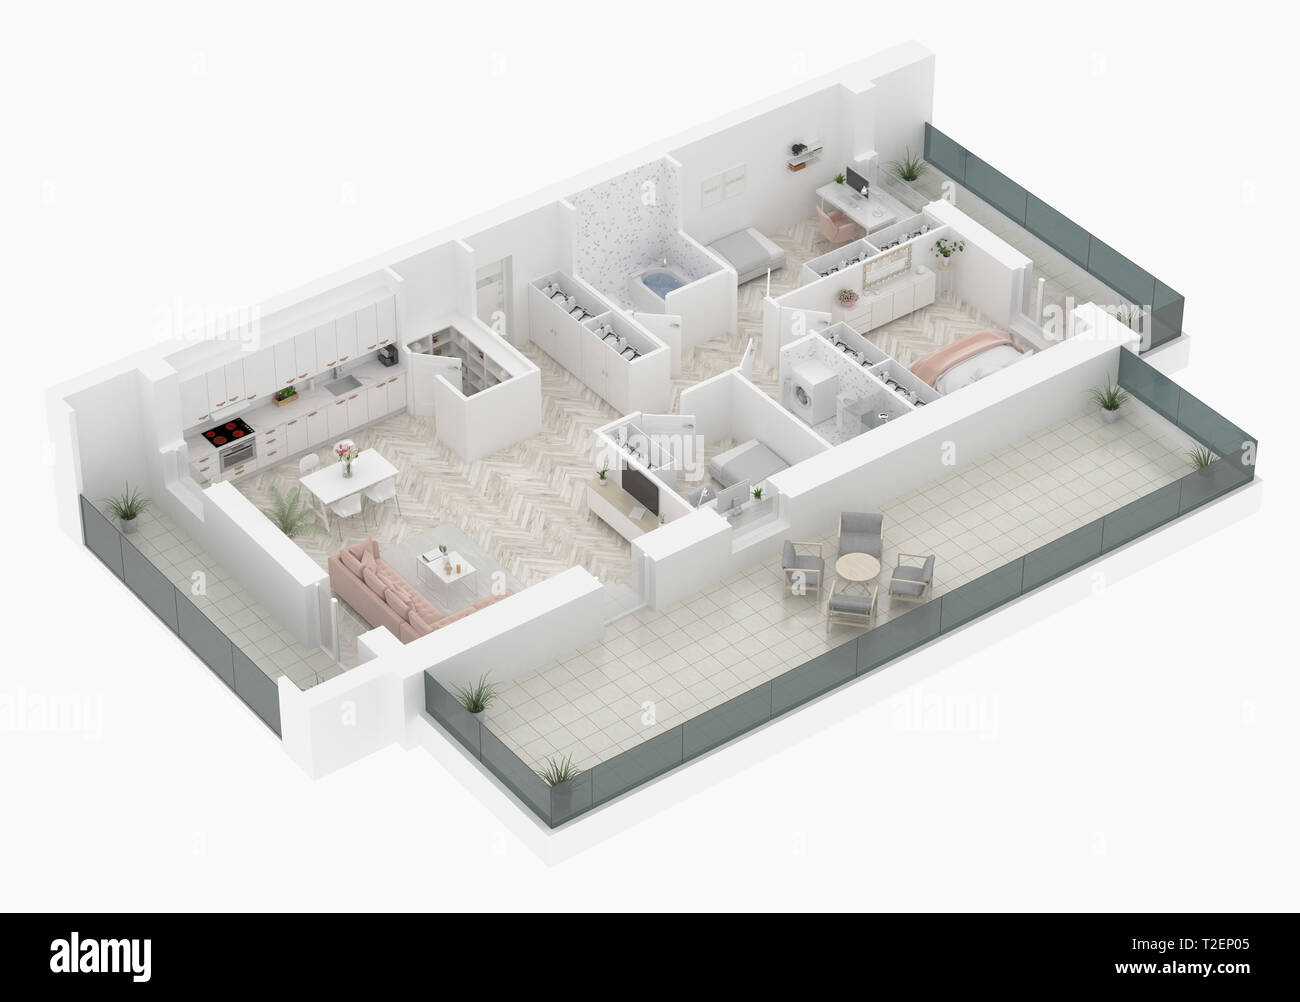 Plan d'étage d'une maison Vue de dessus 3D illustration. Ouvrir concept living appartements Banque D'Images